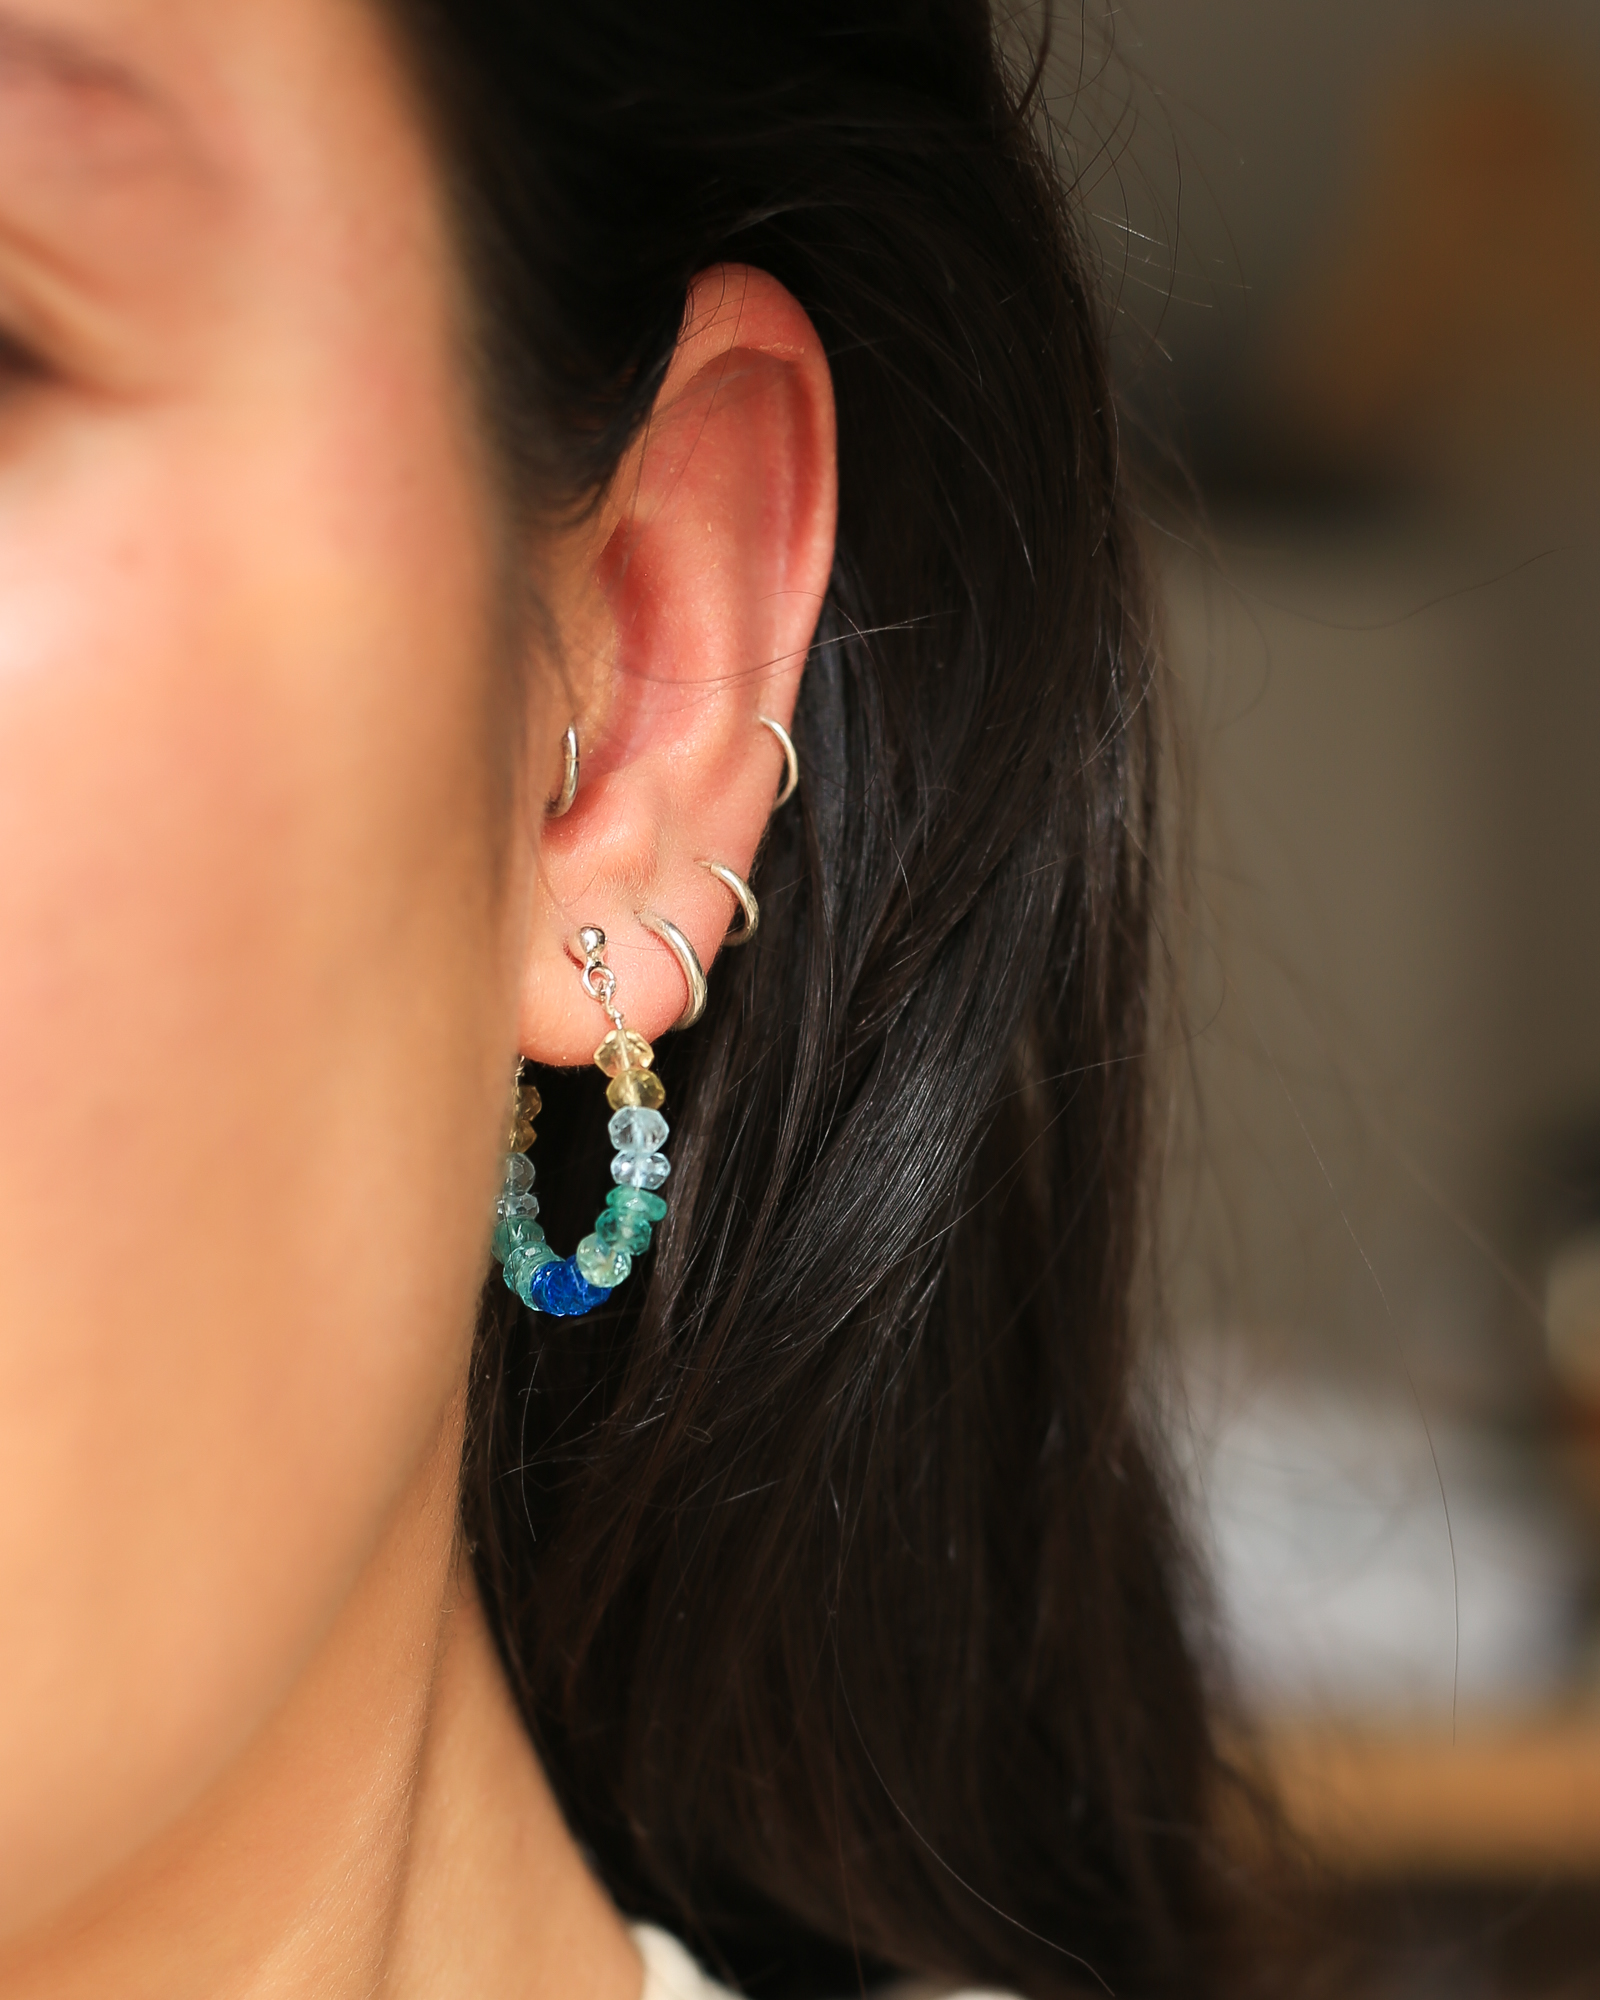 het model draagt oorringen van de edelstenen blauwe apatiet, lichtblauwe aquamarijn en gele citrien. De oorringen hebben zilveren stekers door het oor.